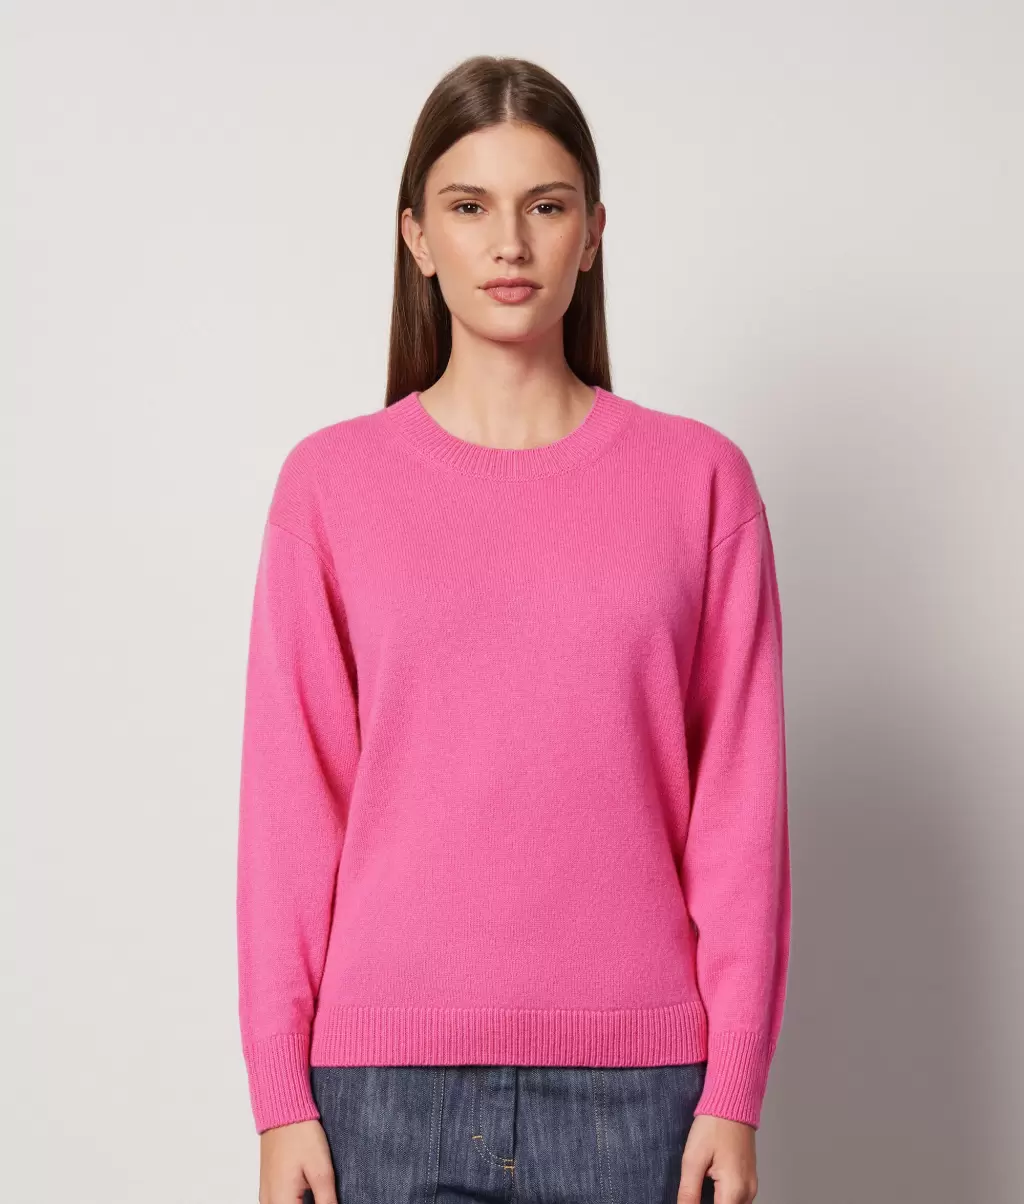 Pink Swetry Z Okrągłym Dekoltem Sweter Z Okrągłym Dekoltem Z Kaszmiru Ultrasoft Falconeri Kobieta - 1